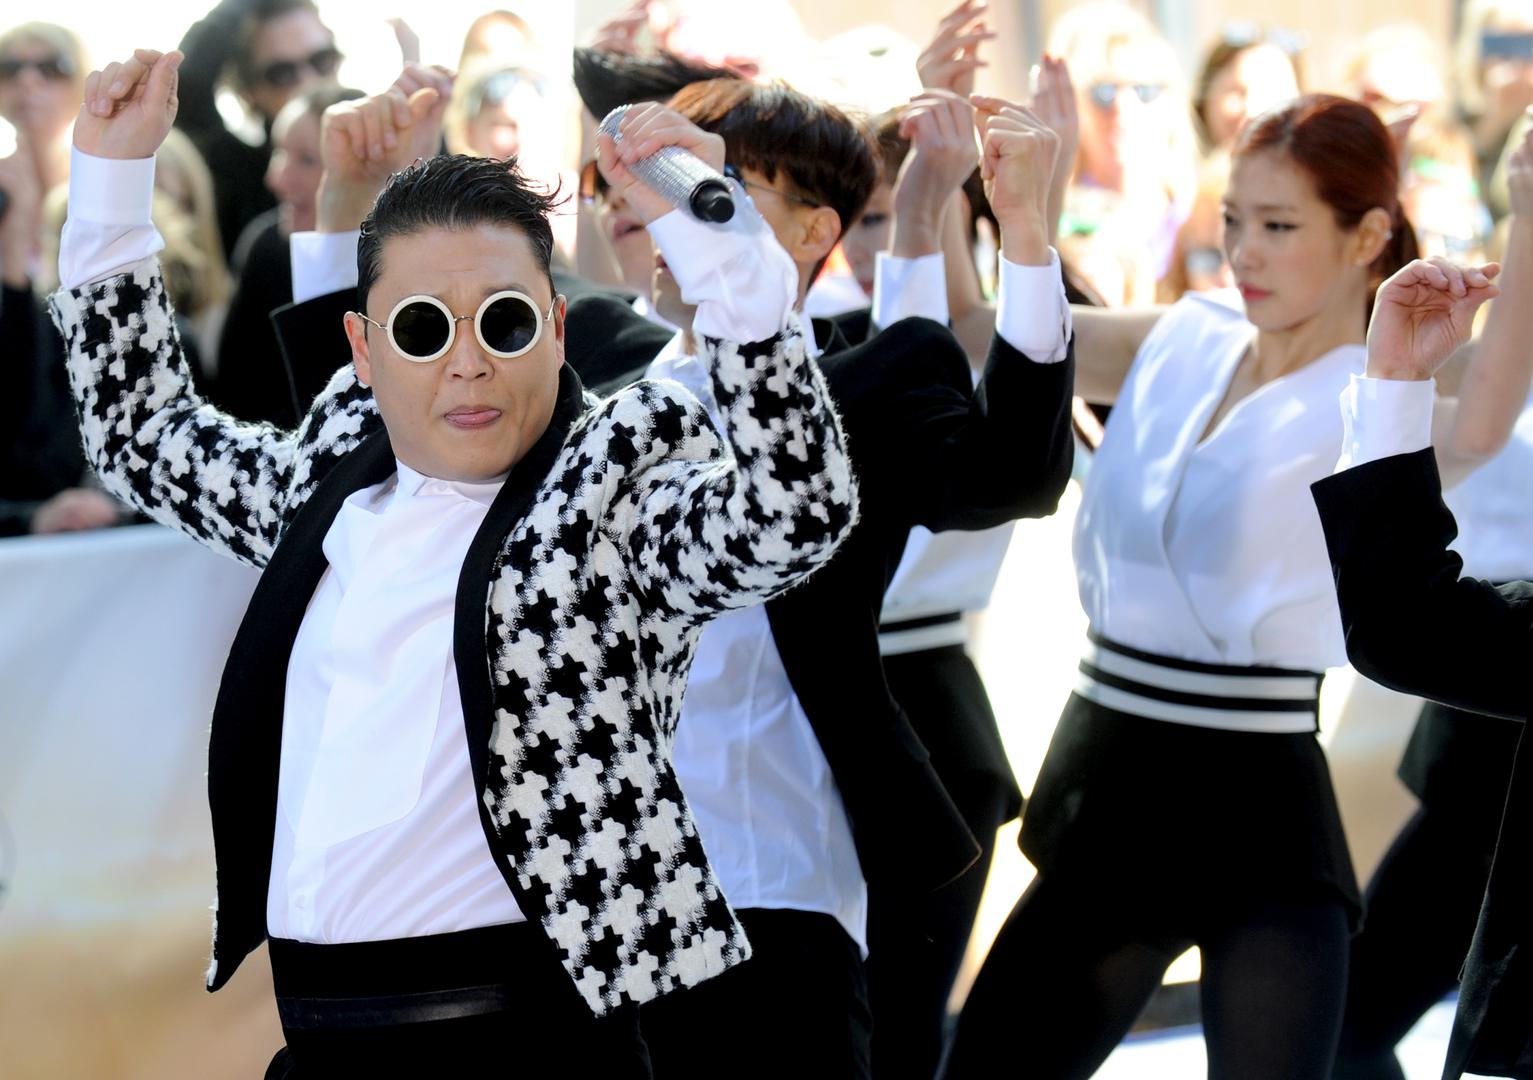 Zarazan ritam pjesme "Gangnam Style" prije četiri godine osvojio je brzo publiku i prvi je na Youtubeu došao do milijardu pregleda što je izvođaču Psyju  osiguralo veliku popularnost koja nije dugo potrajala. Ubrzo je glazbenik iz Južne Koreje pao u depresiju i odao se alkoholu, nije uspio ponoviti uspjeh koji je postigao s "Gangnam Styleom"